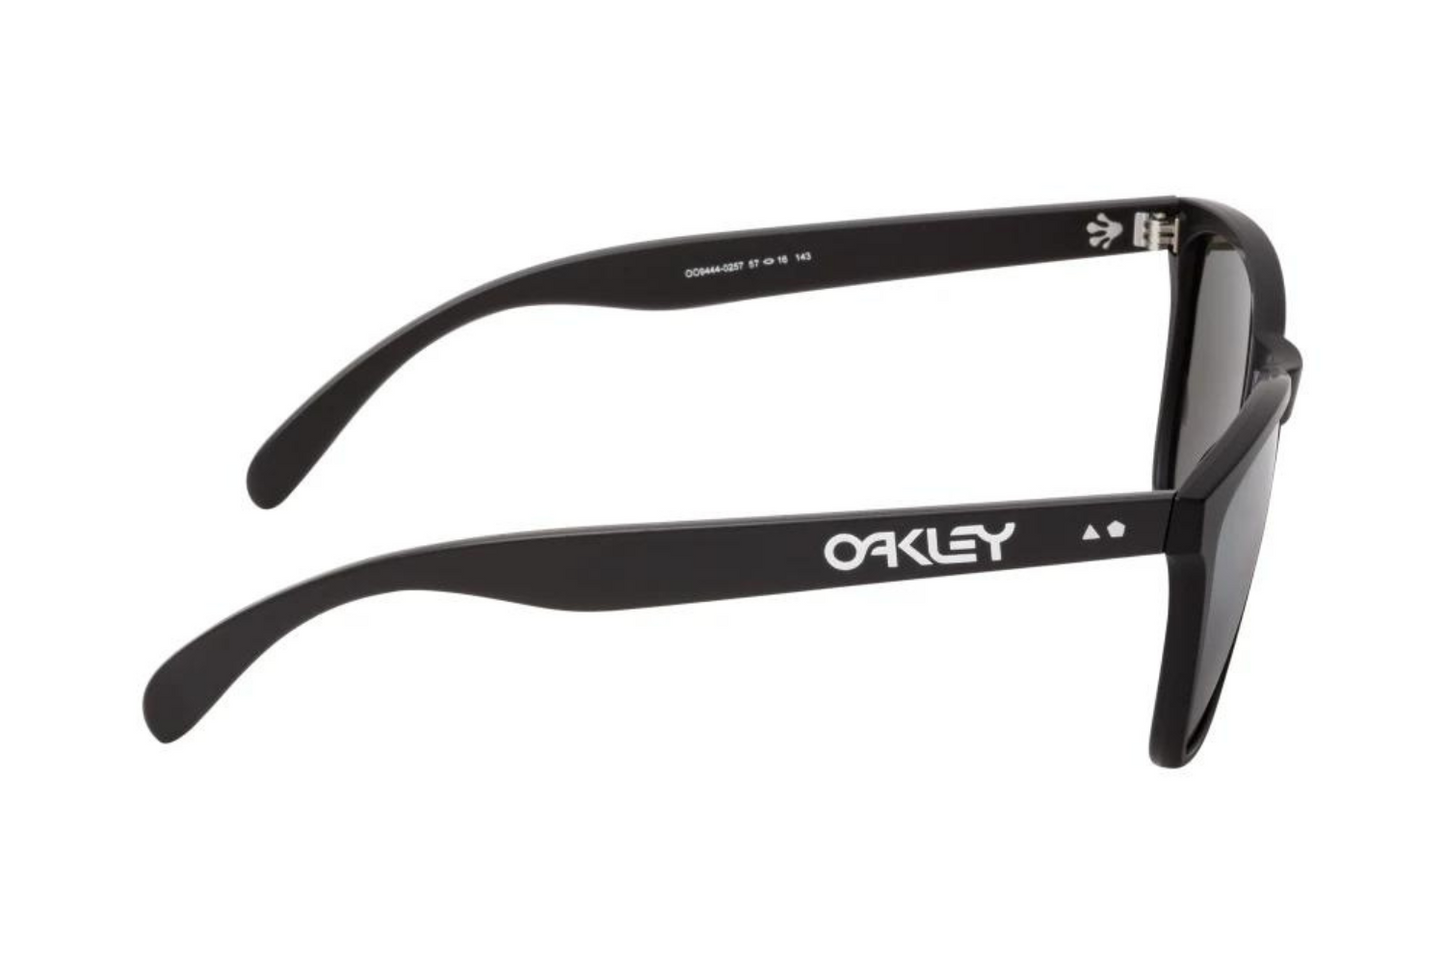 Oakley Sunglasses Frogskins OO 9444 02 57